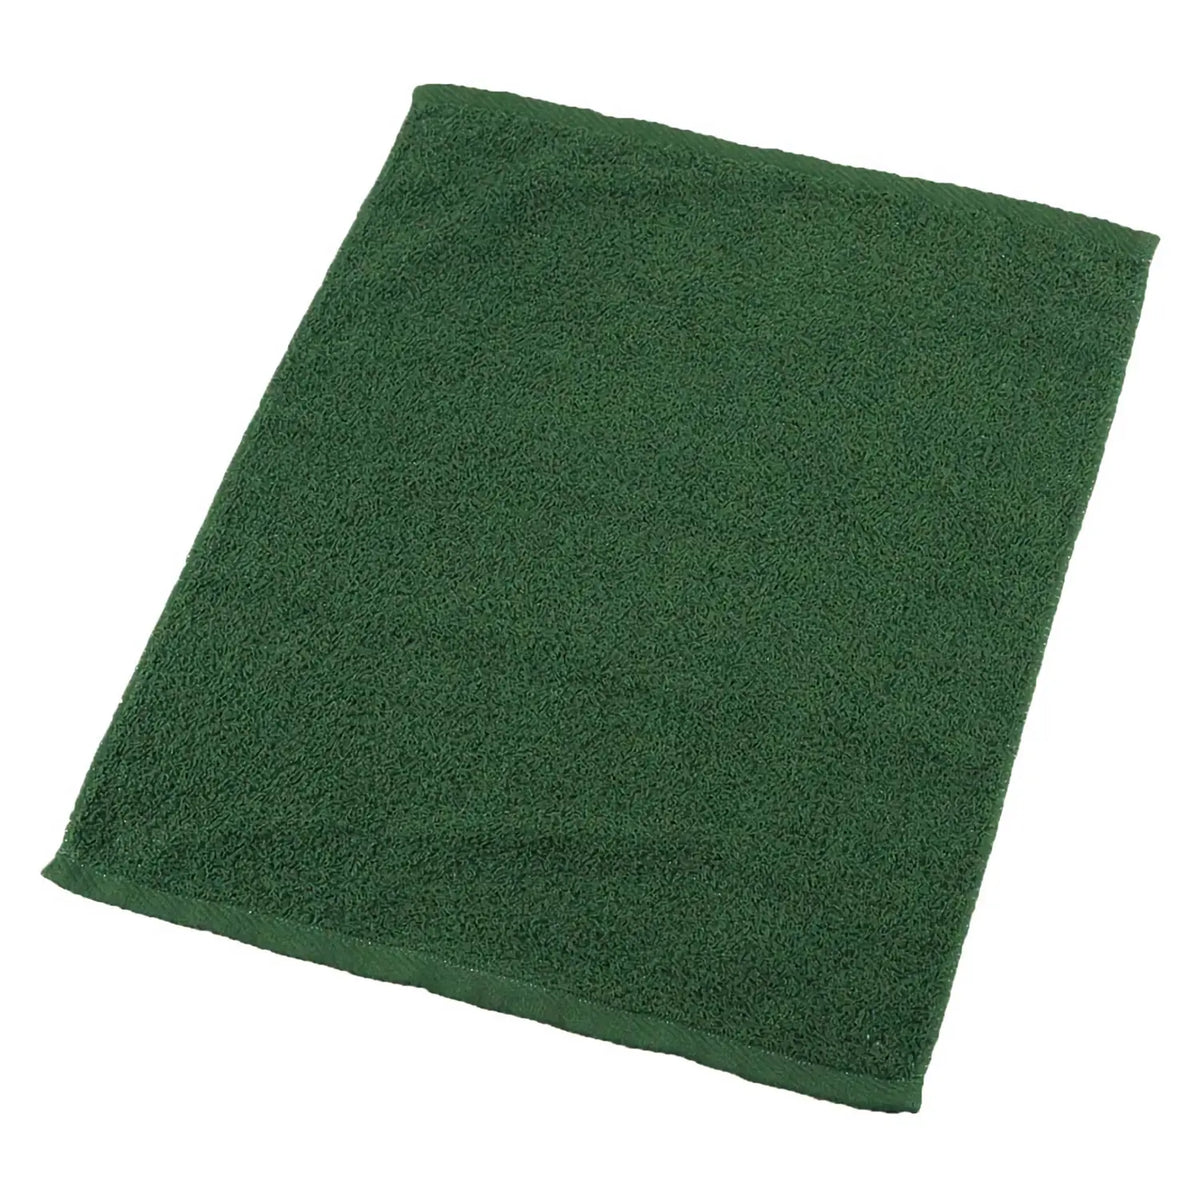 μ-func. Cotton Antibacterial Oshibori Towel 340x440mm 12 pcs